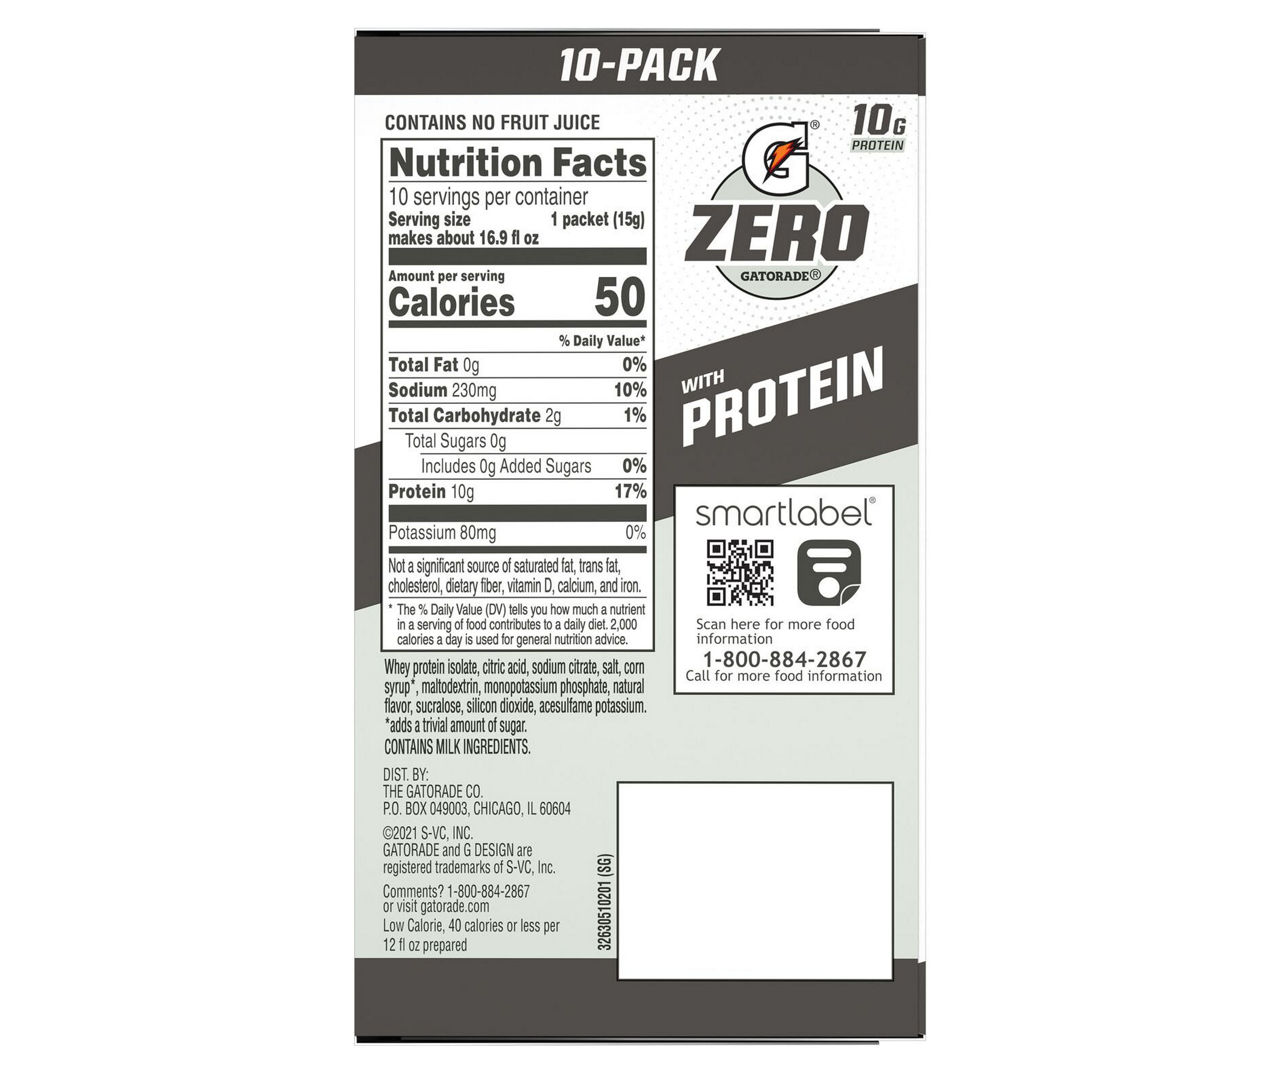 Save on Gatorade Zero Protein Thirst Quencher Fruit Punch - 4 pk